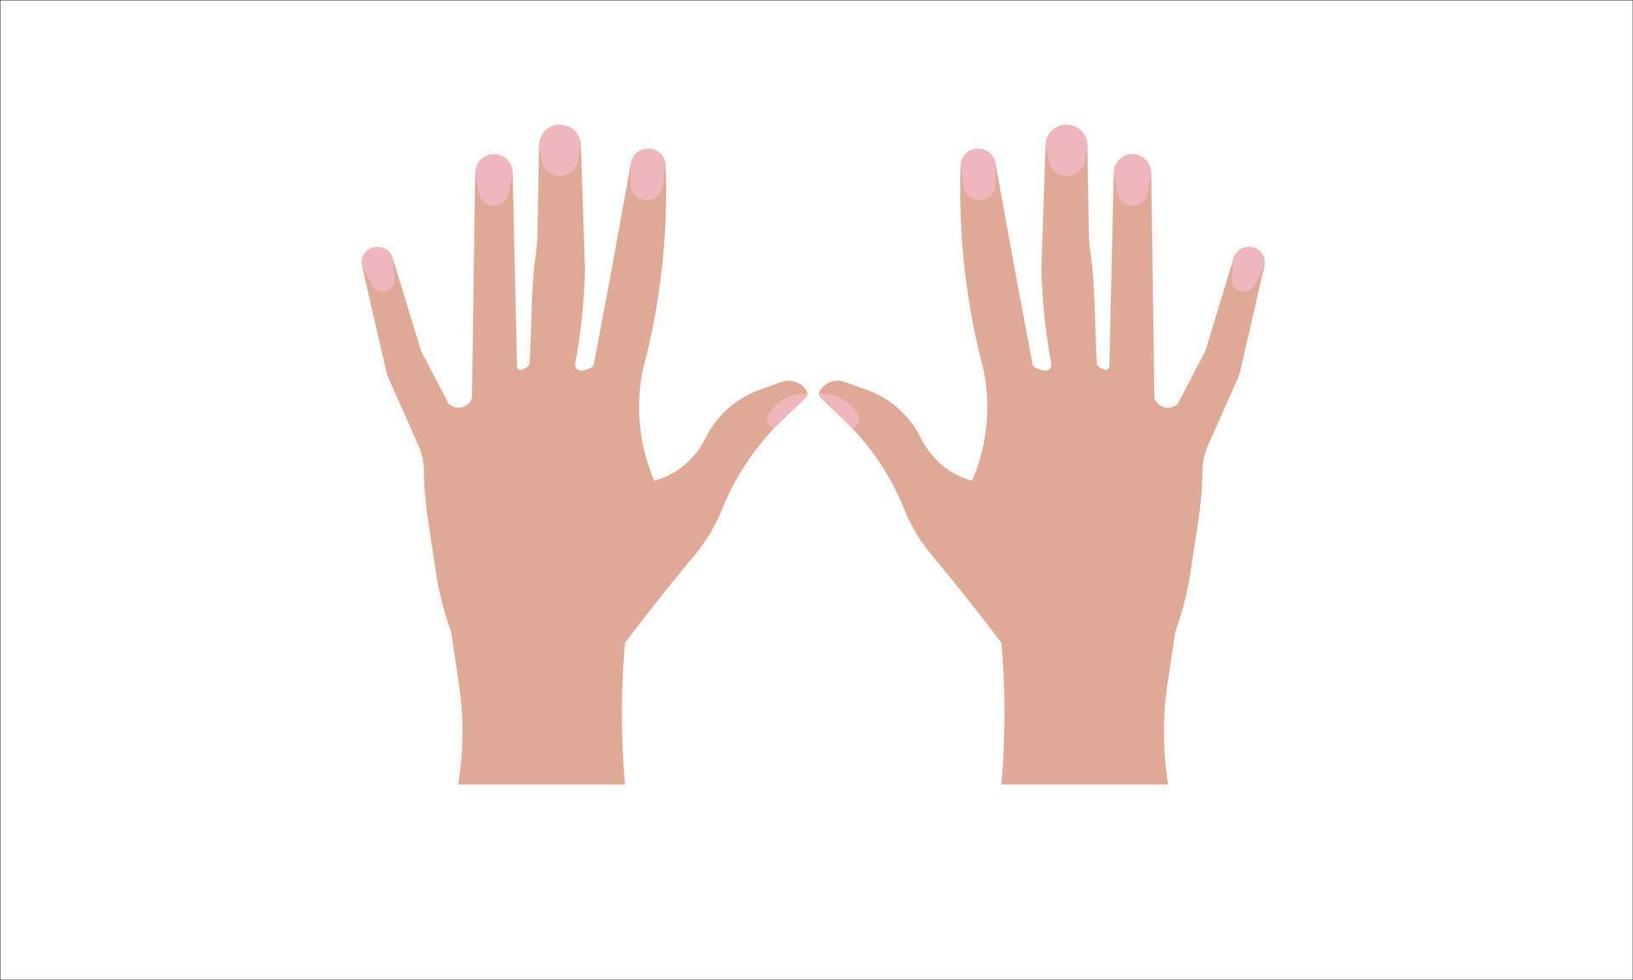 dezelfde beweging van beide handen. vector illustratie